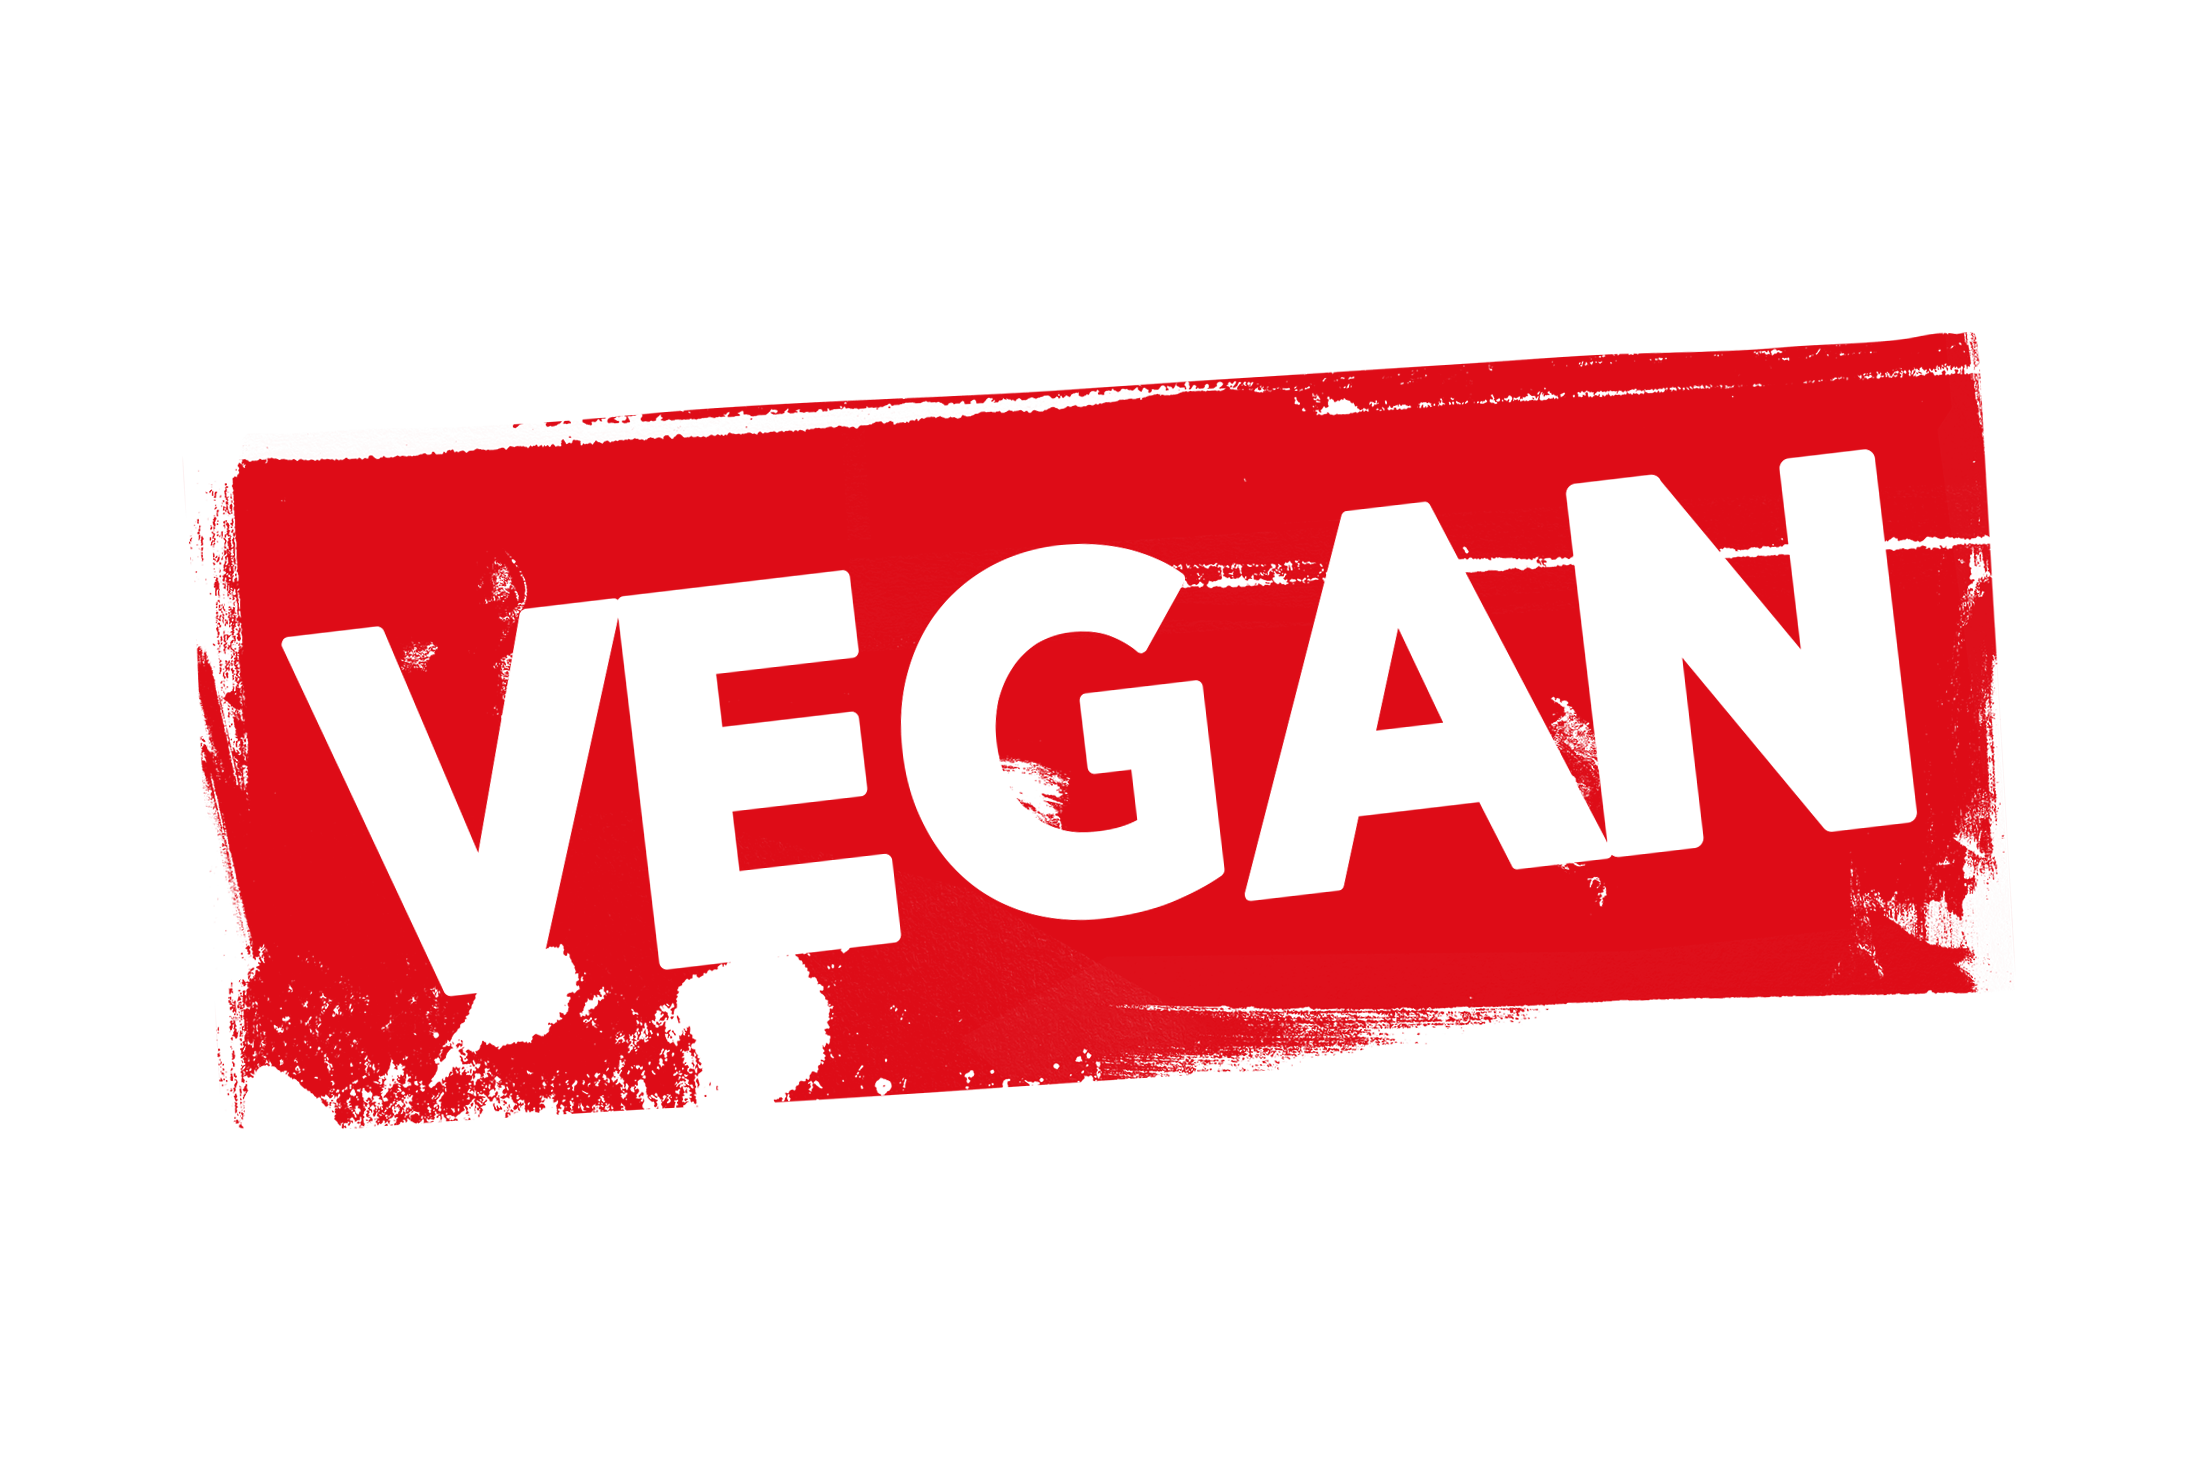 Grunge vegan label PSD